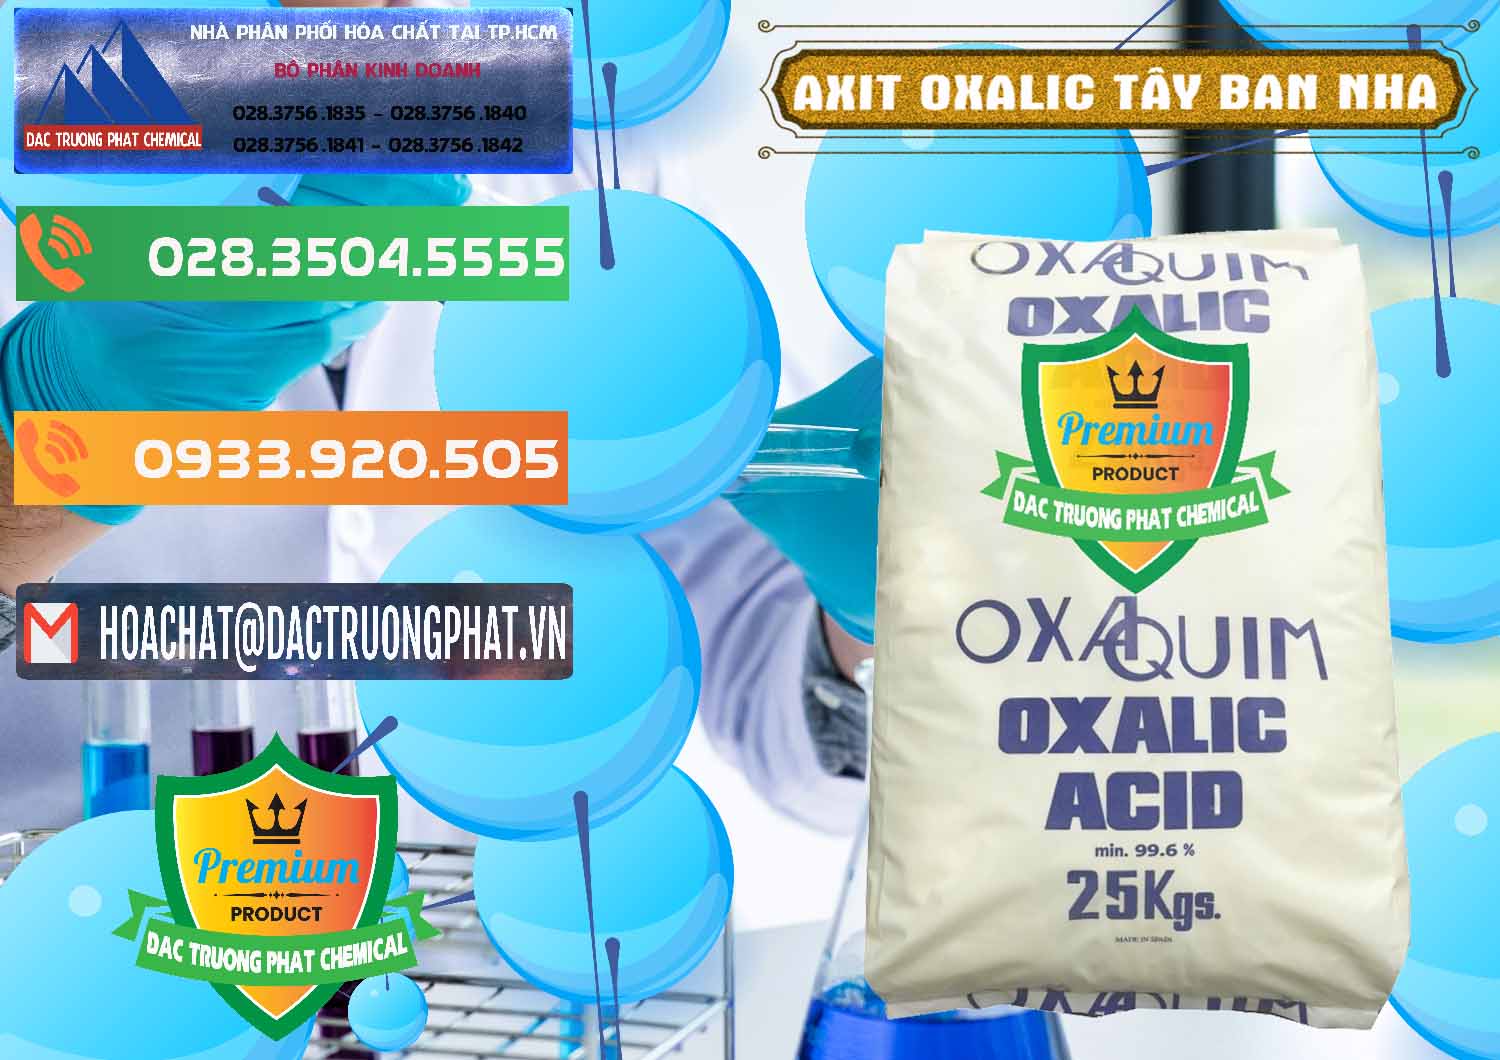 Đơn vị chuyên bán & cung cấp Acid Oxalic – Axit Oxalic 99.6% Tây Ban Nha Spain - 0269 - Công ty bán và phân phối hóa chất tại TP.HCM - hoachatxulynuoc.com.vn